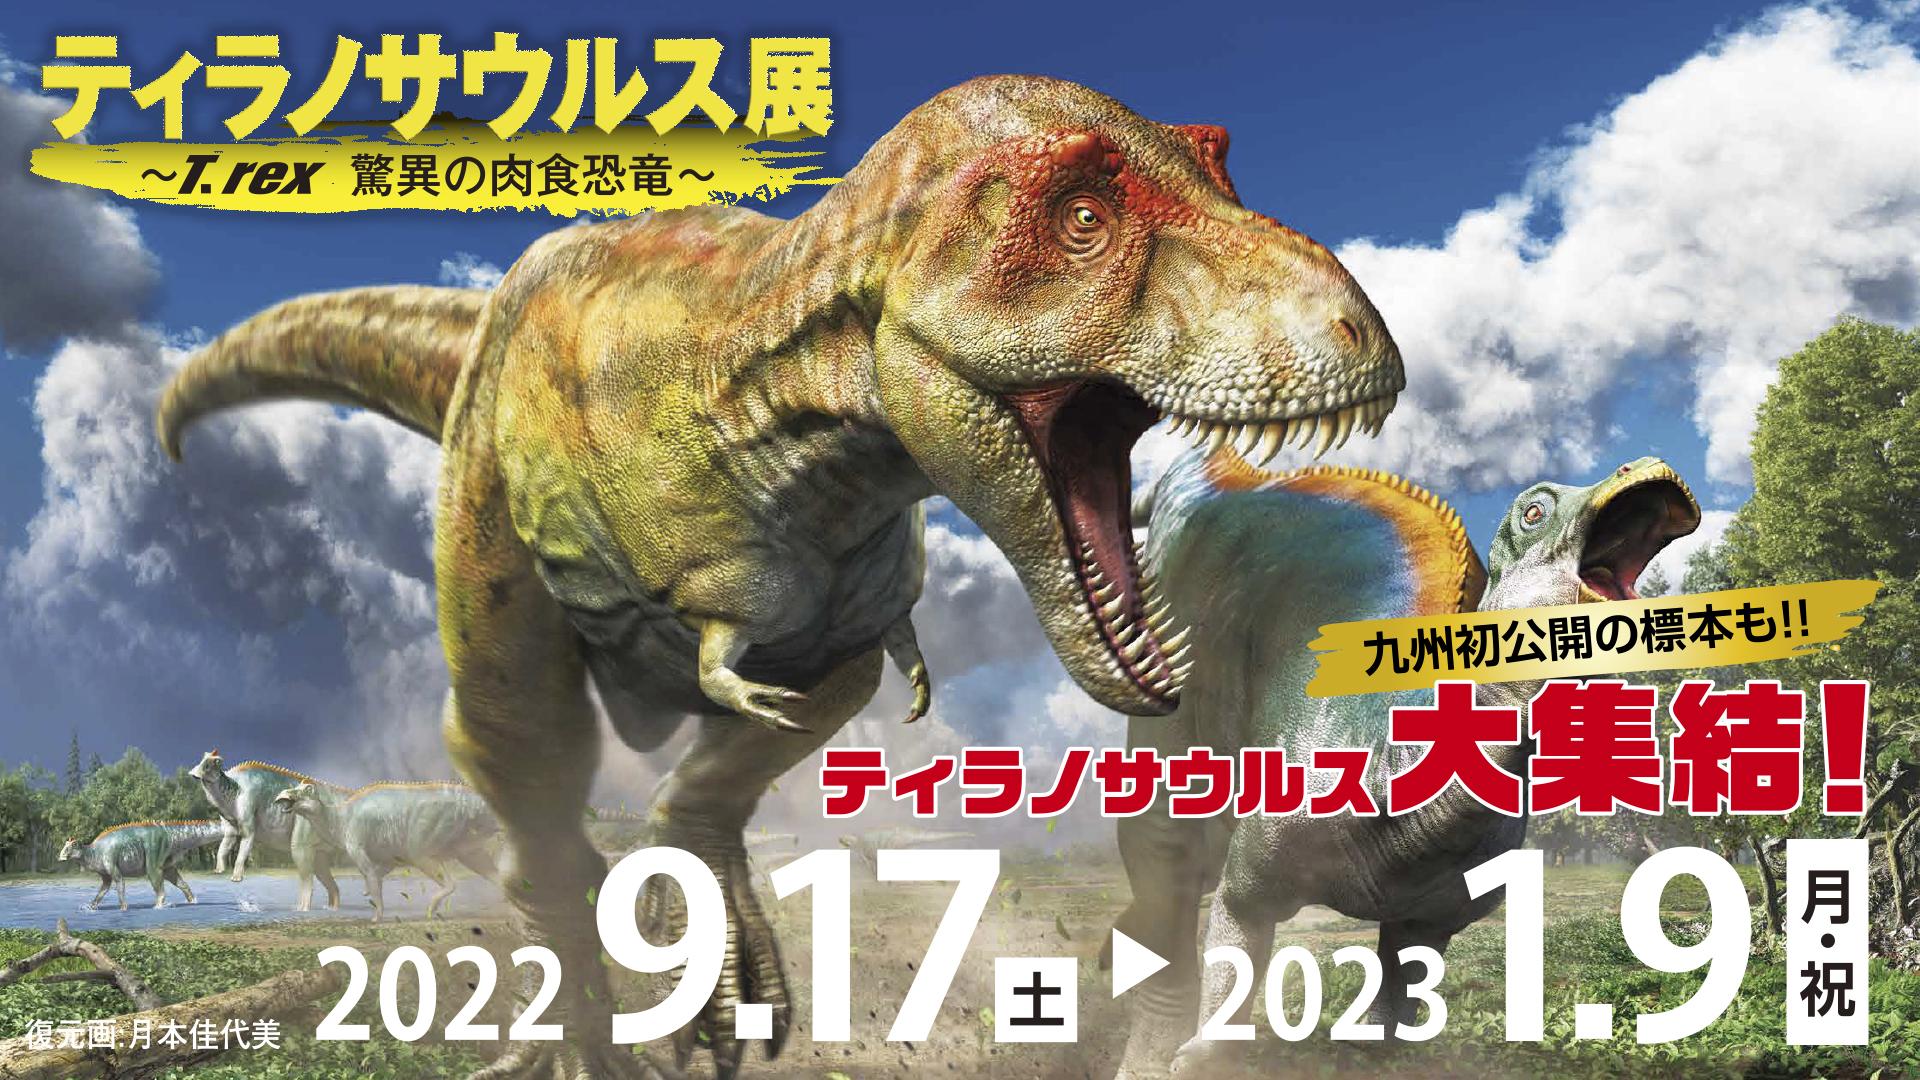 9 17 土 1 9 日 祝 特別展 ティラノサウルス展 T Rex 驚異の肉食恐竜 特別展 企画展 福岡市科学館